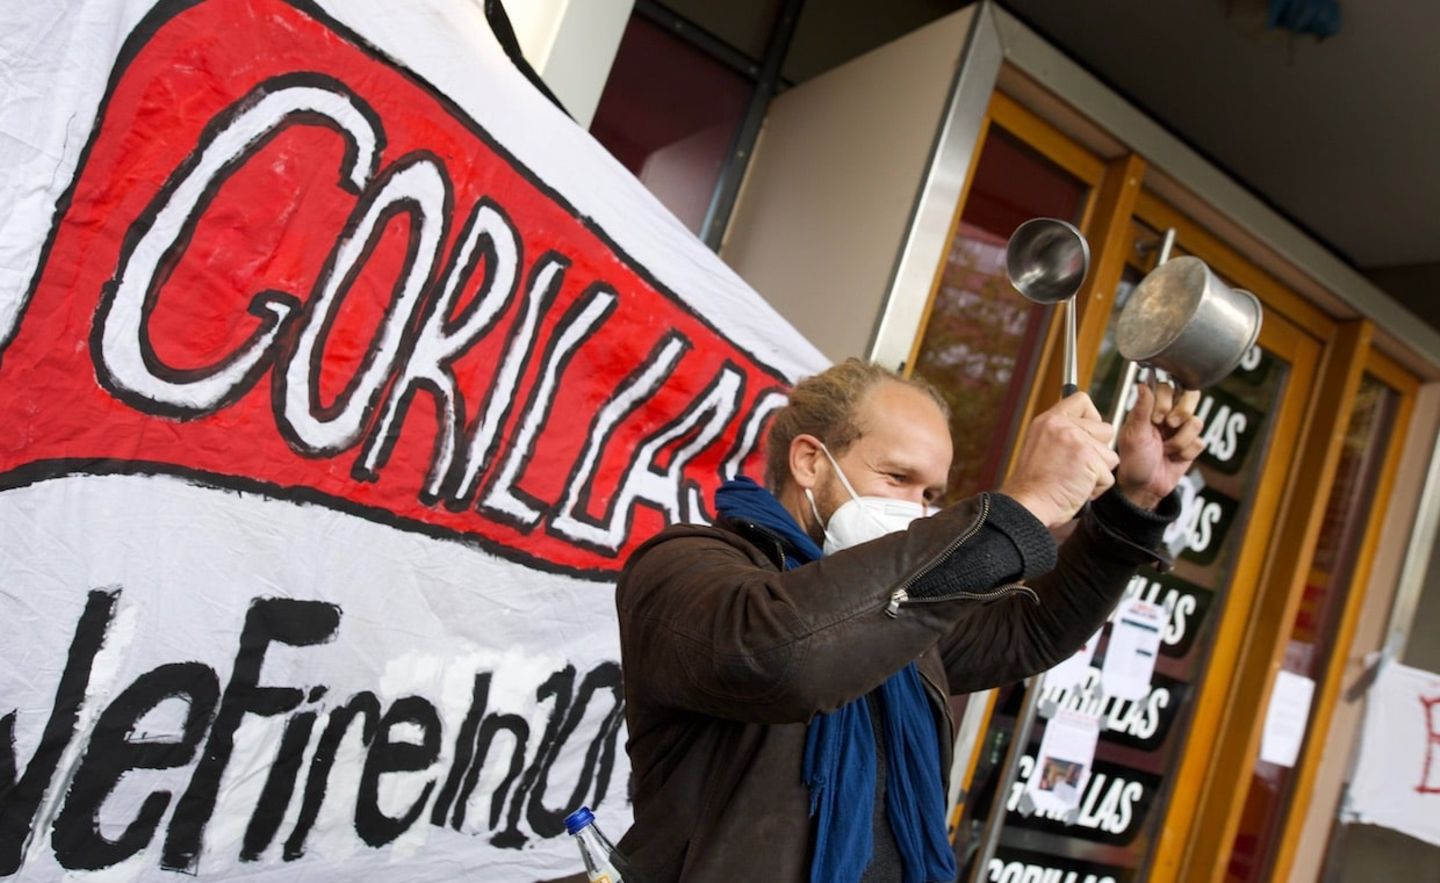 Lautstarker Protest vor der Gorillas-Zentrale in Berlin am Mittwoch